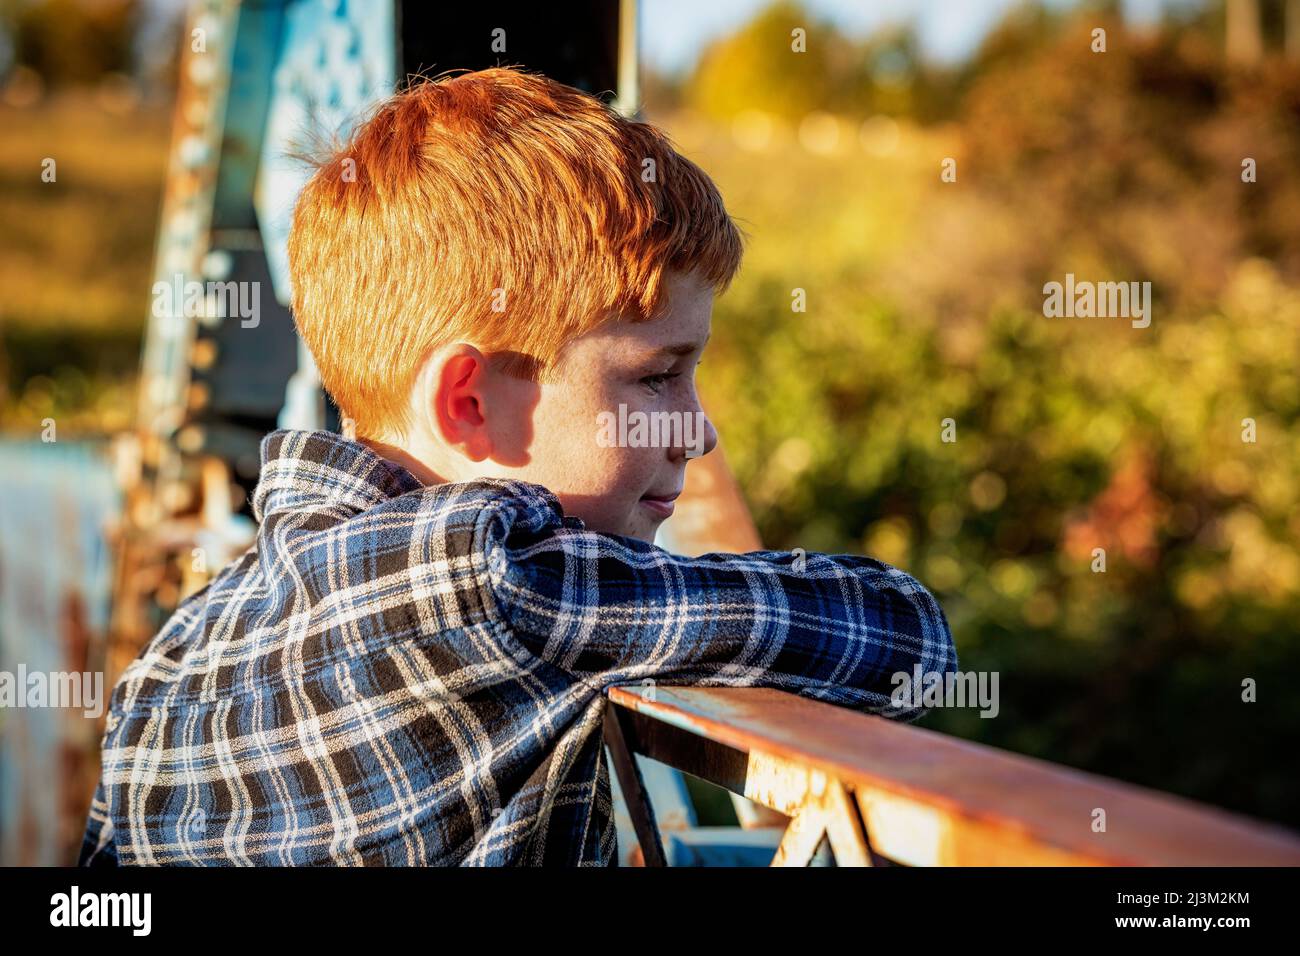 Portrait extérieur d'un garçon aux cheveux rouges debout sur un pont dans un parc donnant sur la rambarde; Edmonton, Alberta, Canada Banque D'Images